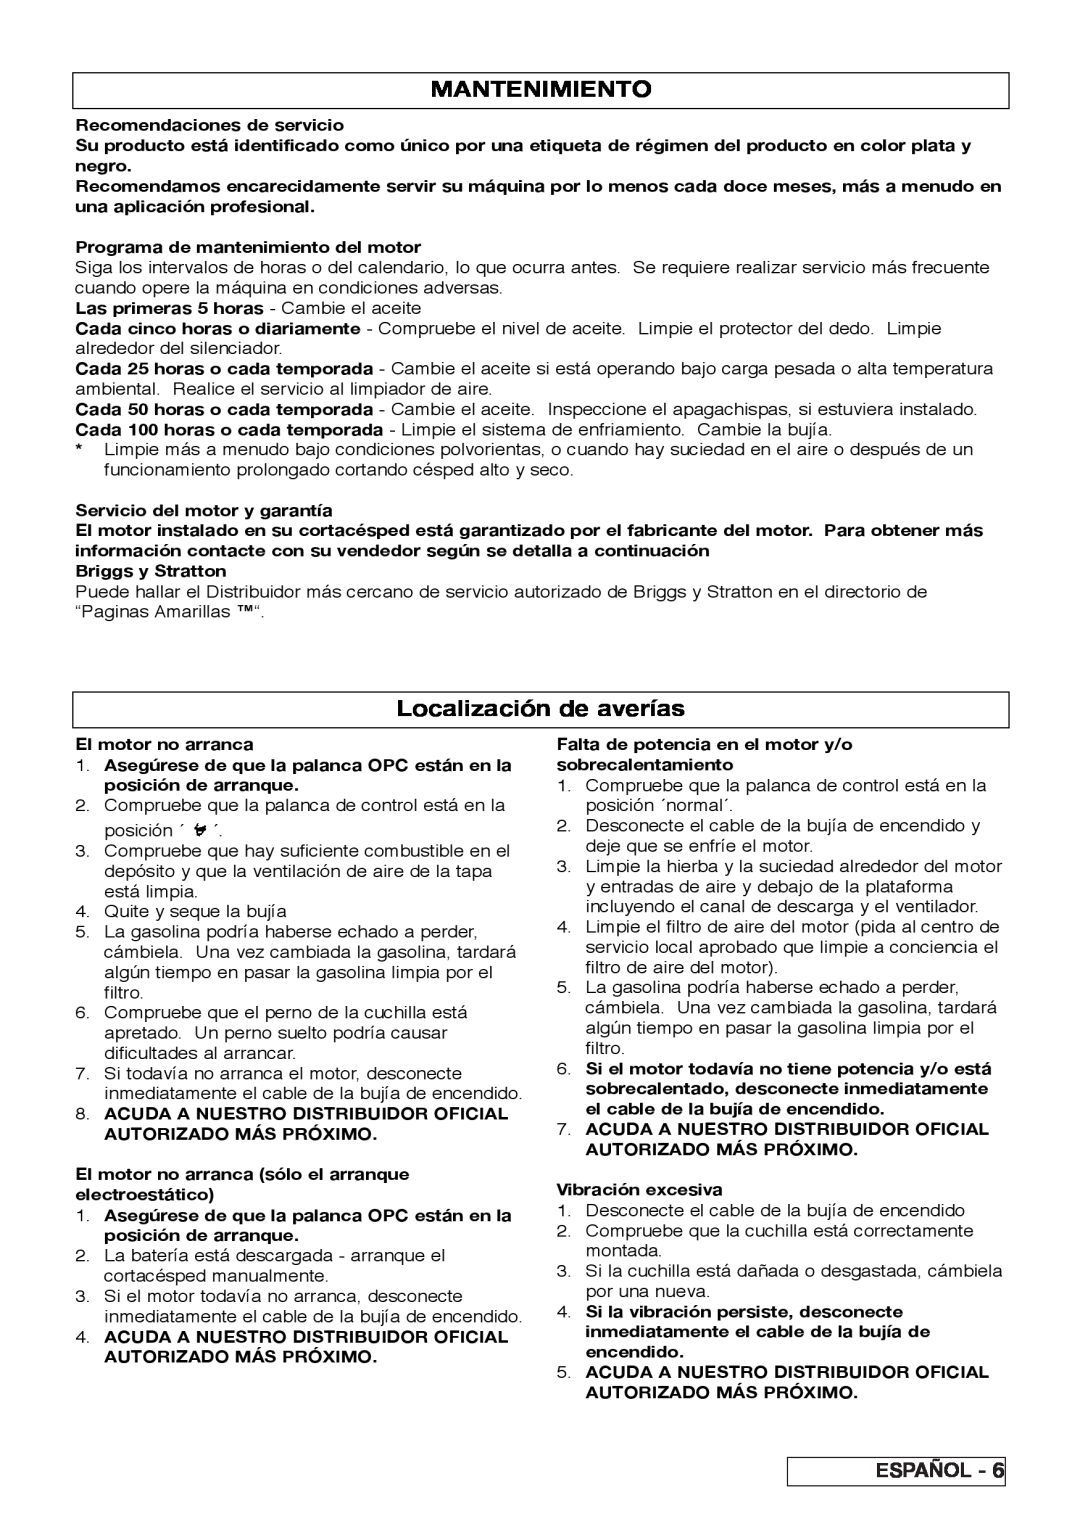 Husqvarna R 43SE manual Mantenimiento, Localización de averías, Español 